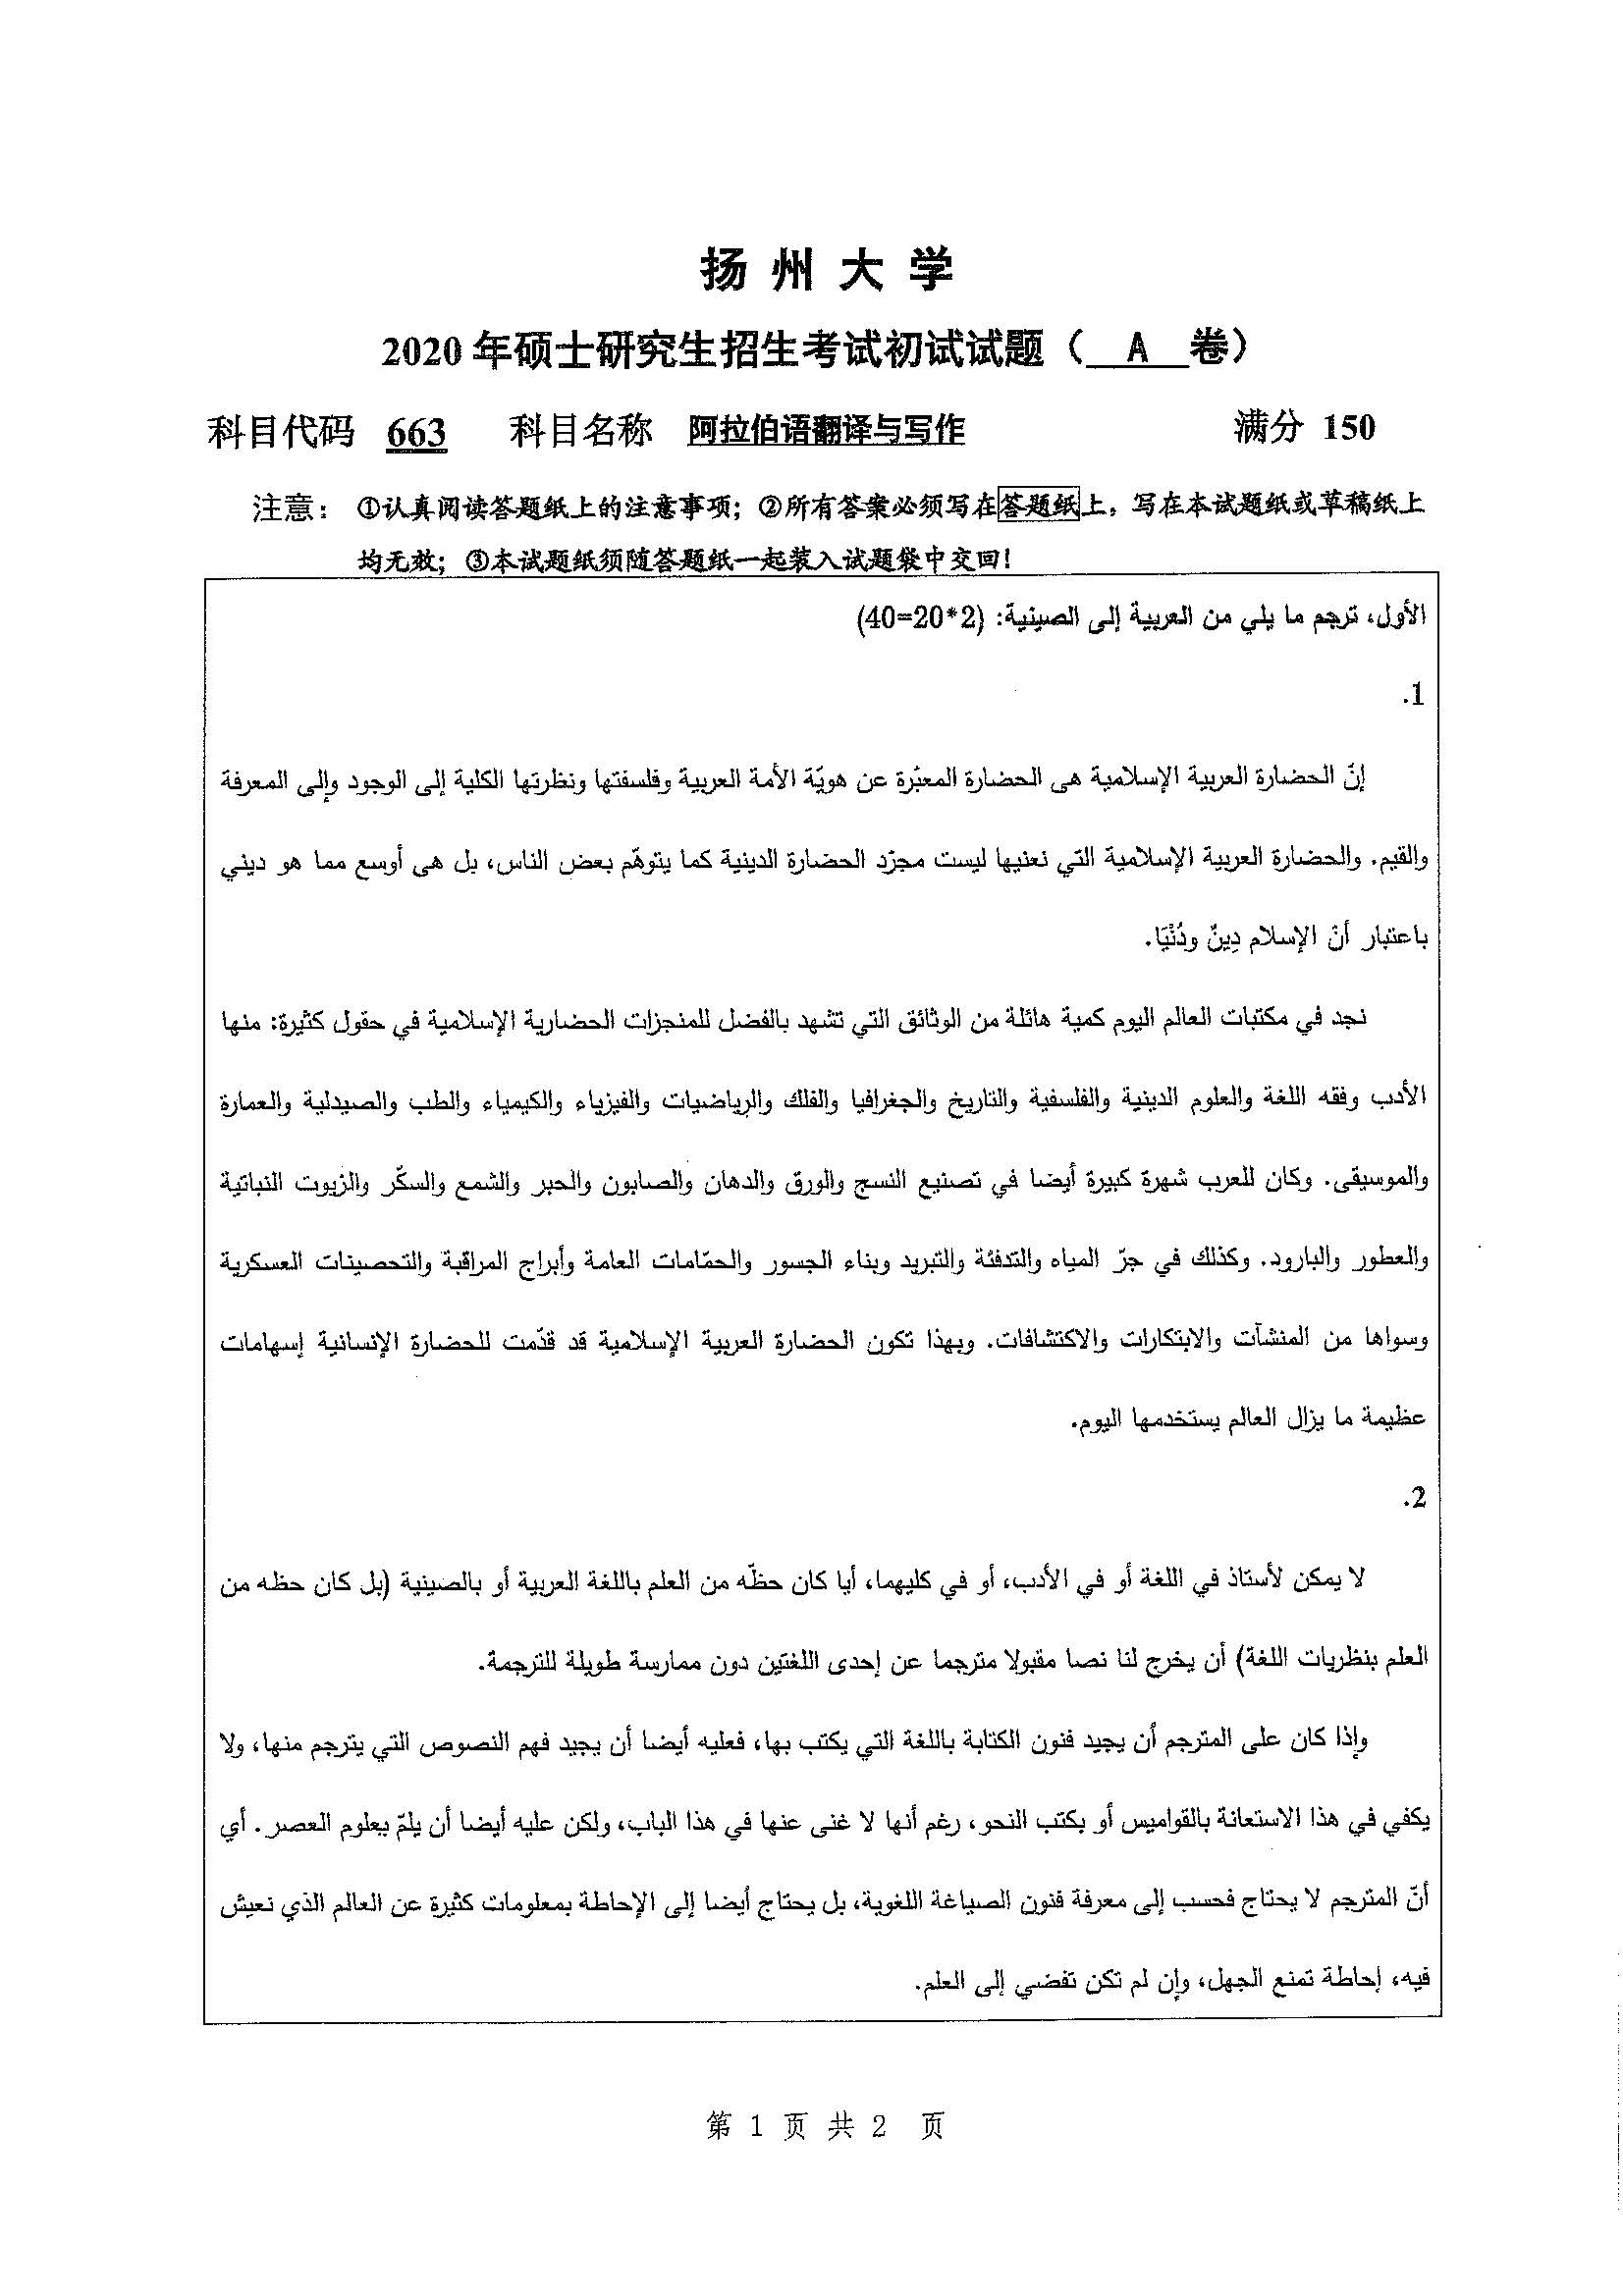 663阿拉伯语翻译与写作2020年考研初试试卷真题扬州大学